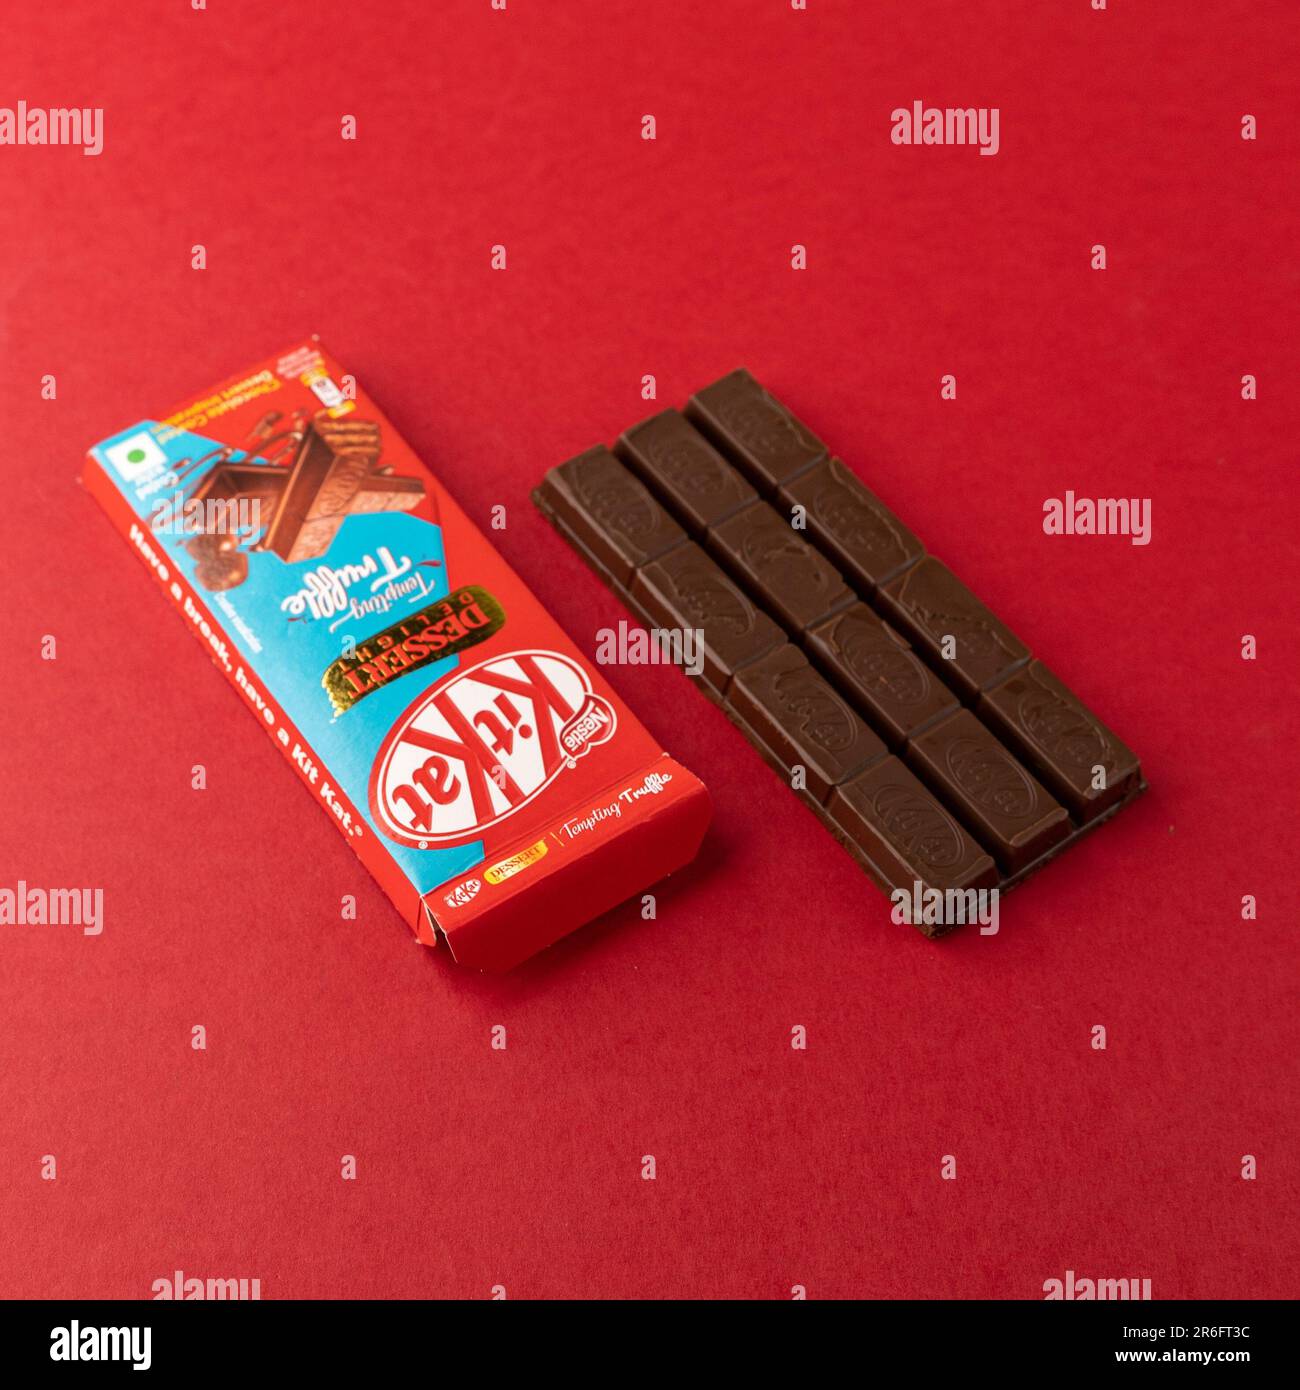 Nestle Caramel KitKat isolated on white background - Kit Kat